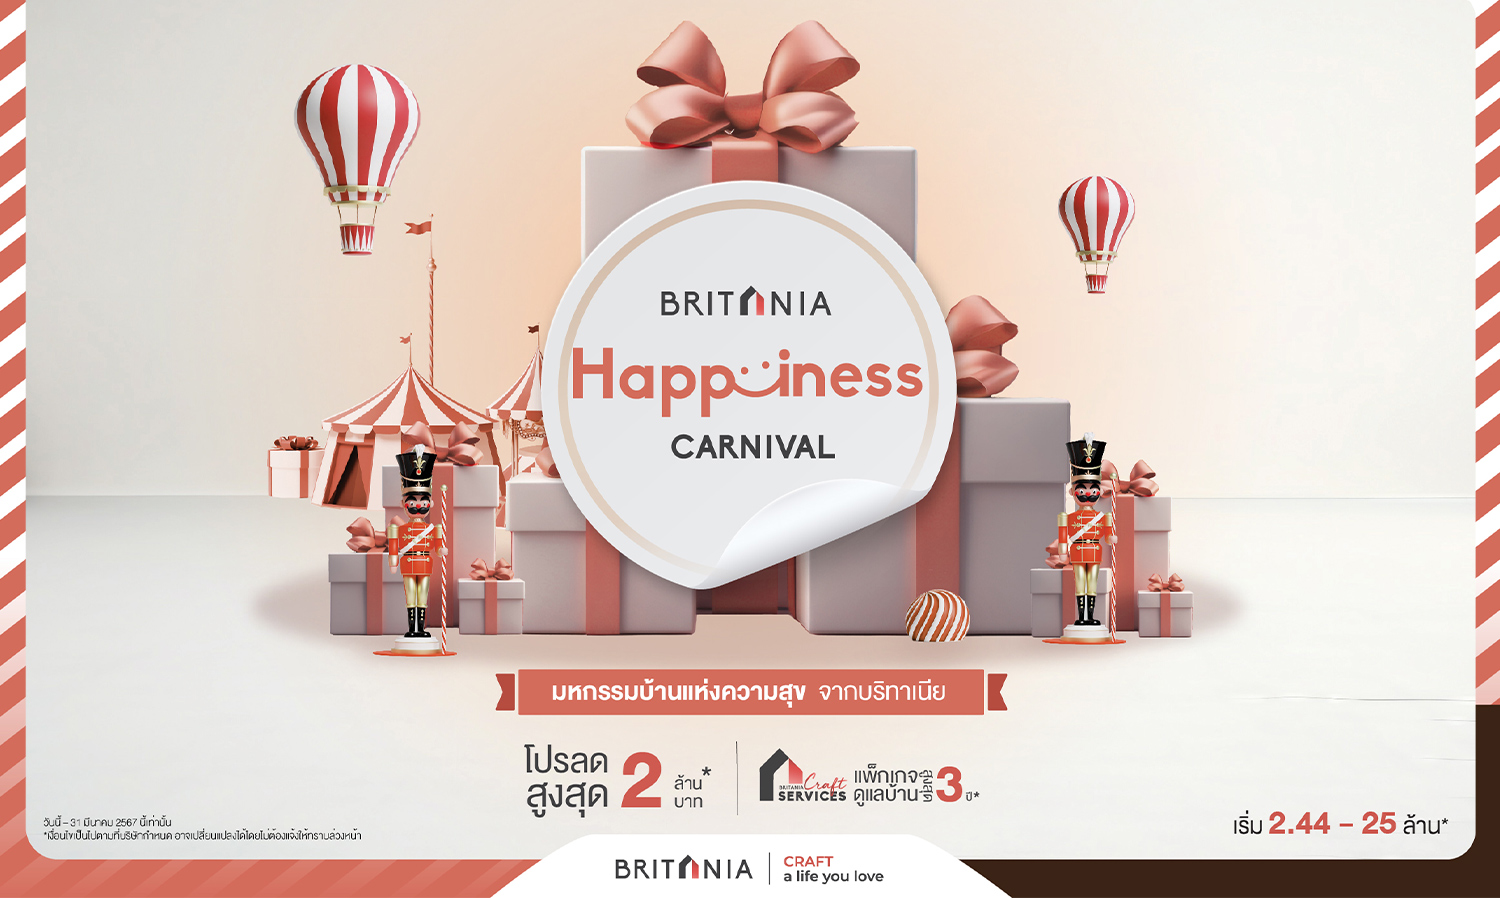 บริทานีย-จัดโปรพิเศษ-britania-happiness-carnival-ลดสู-